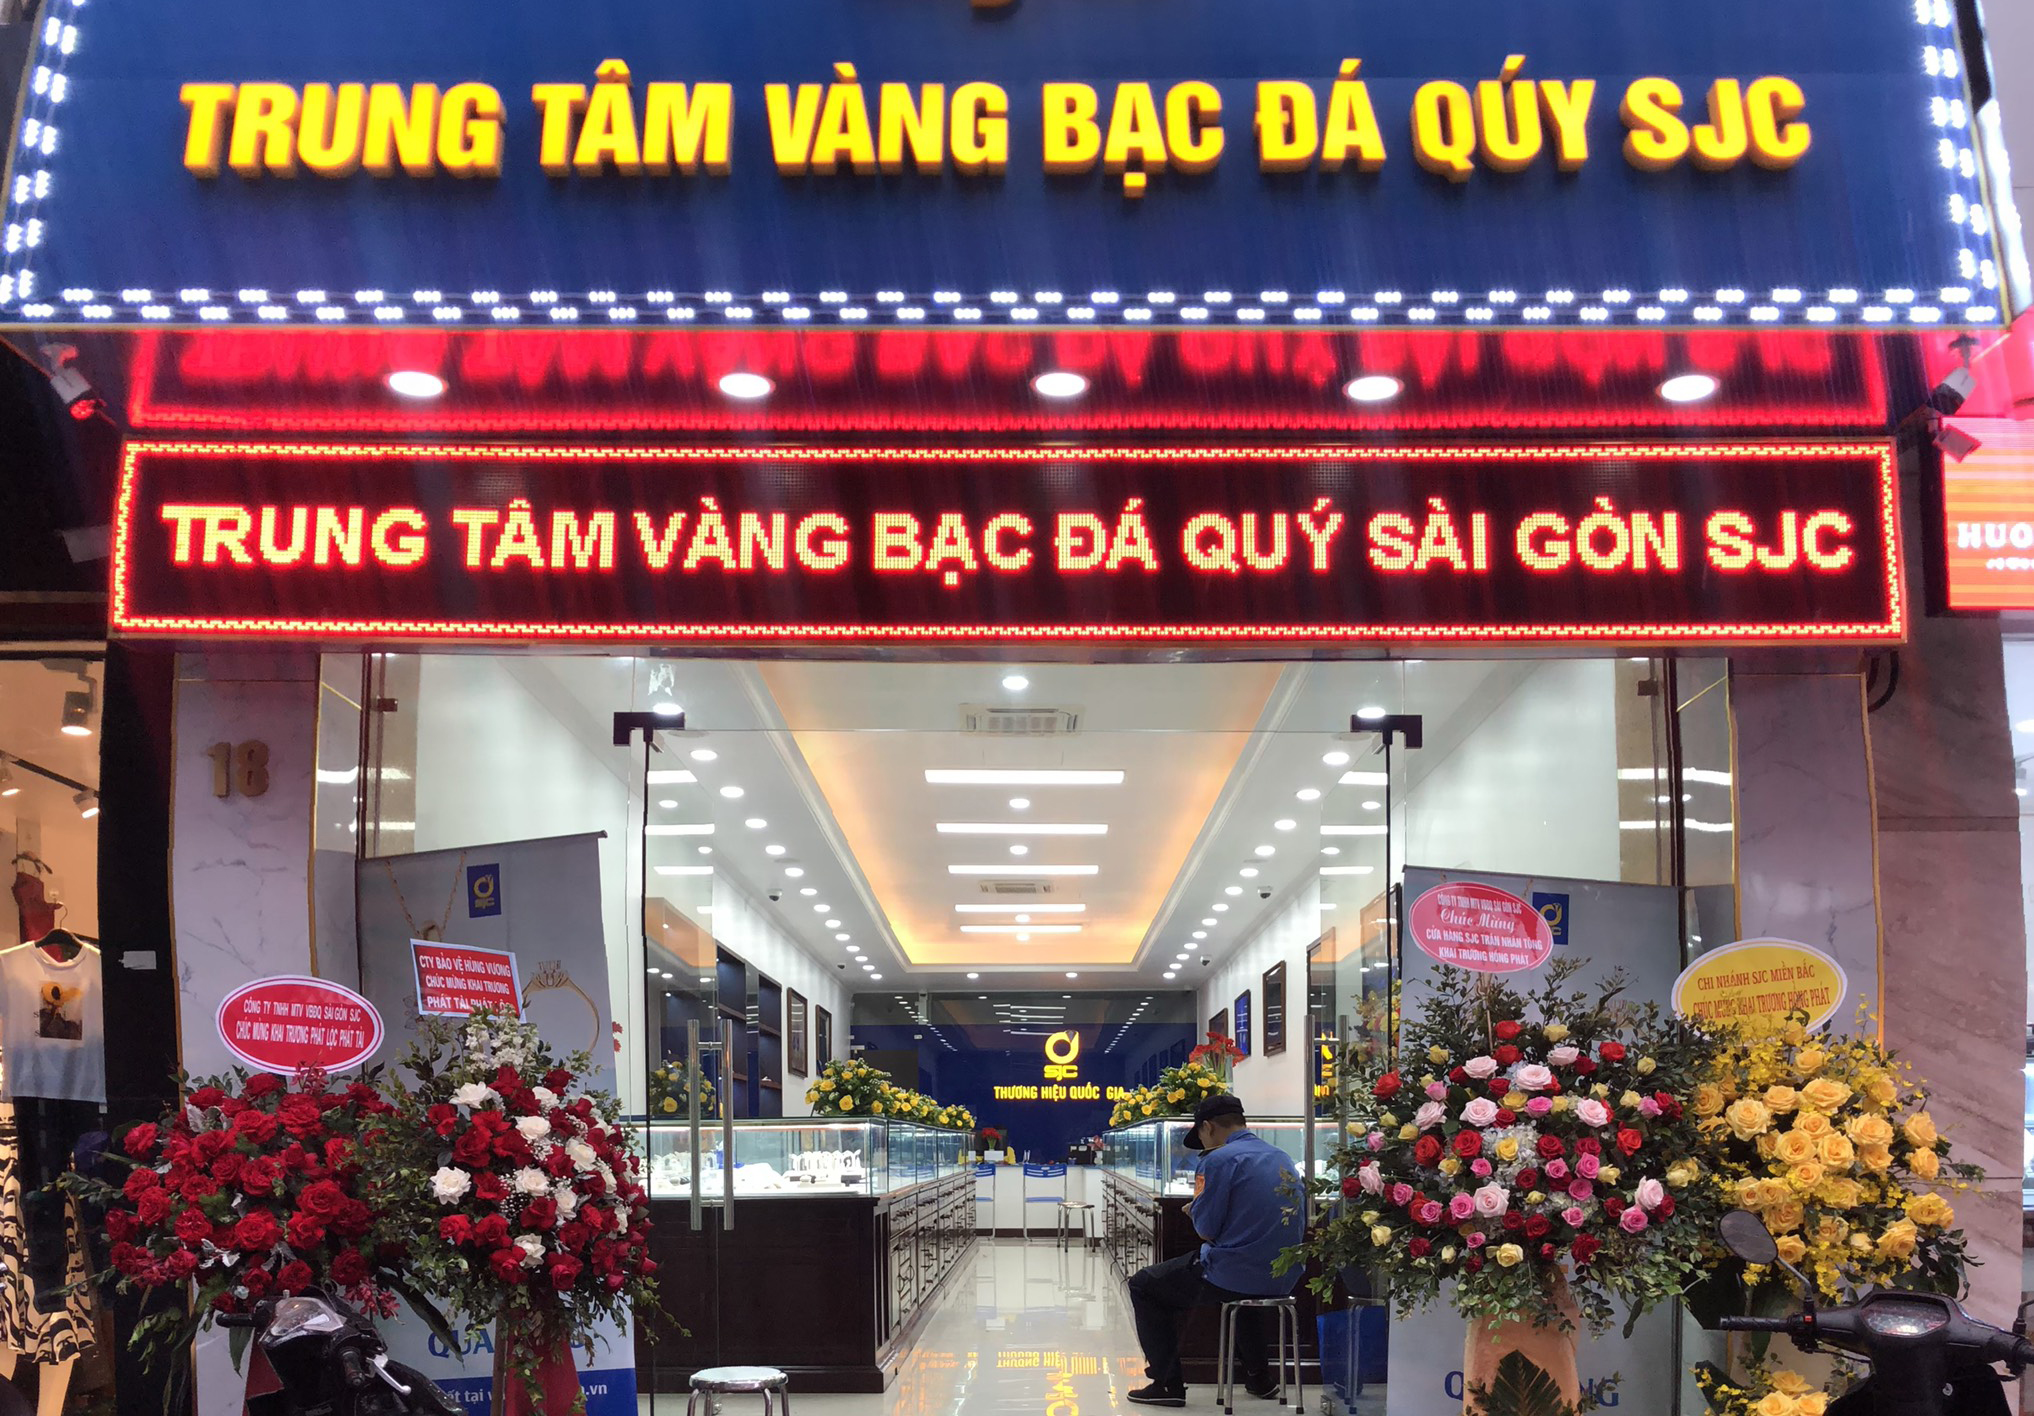 Cửa hàng vàng bạc đá quý Sài Gòn - SJC